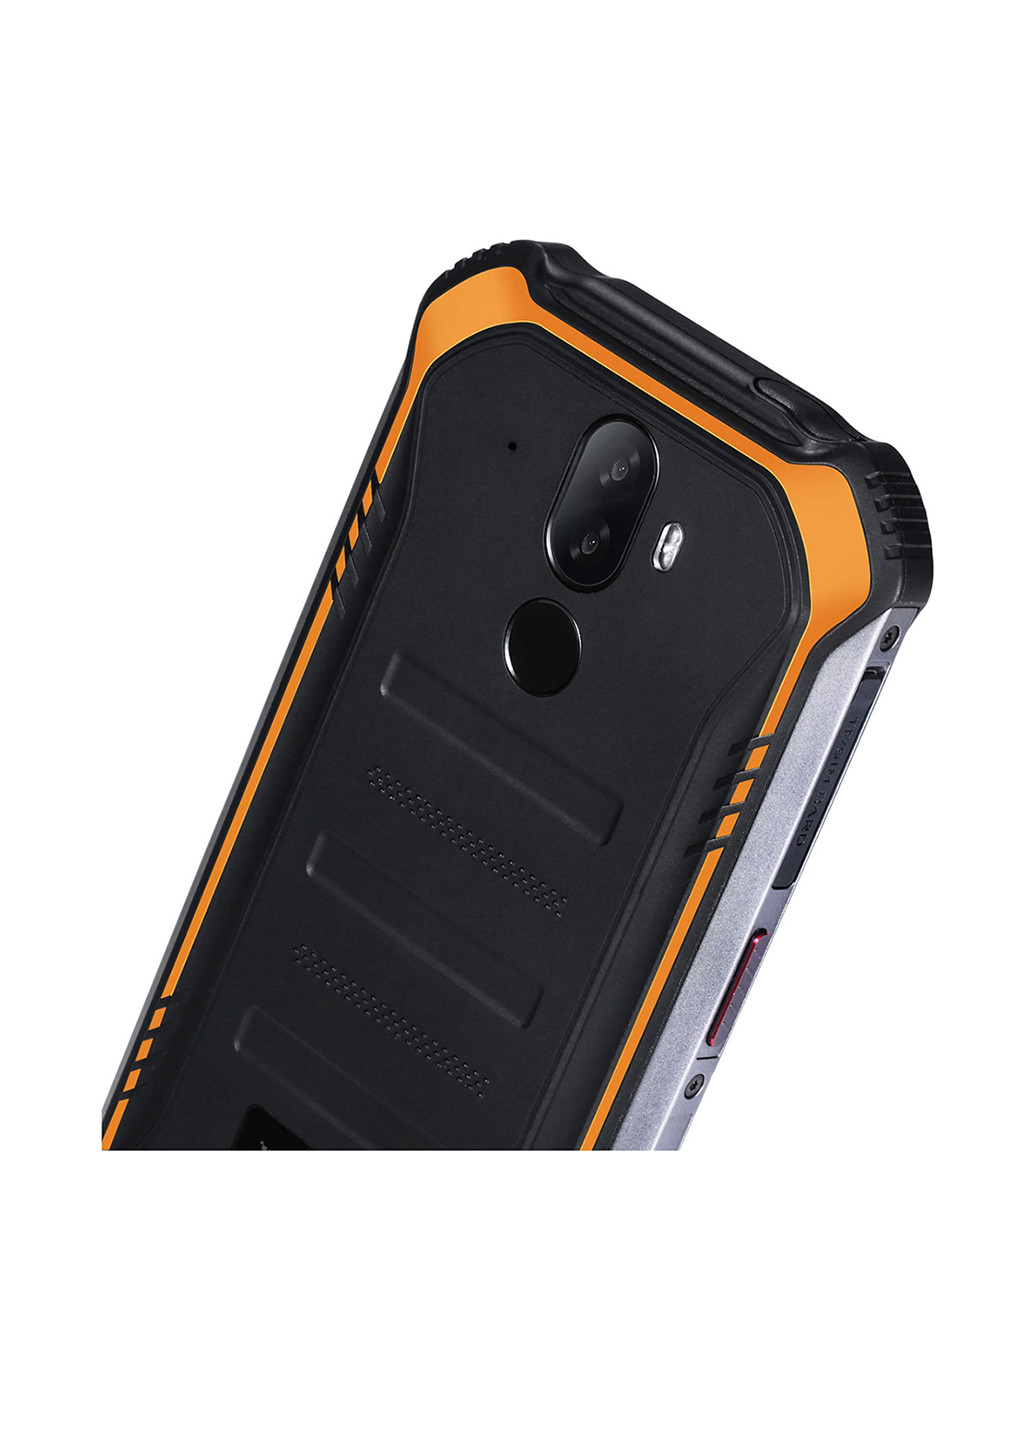 Смартфон S40 3 / 32GB Orange Doogee s40 3/32gb orange (155433455)